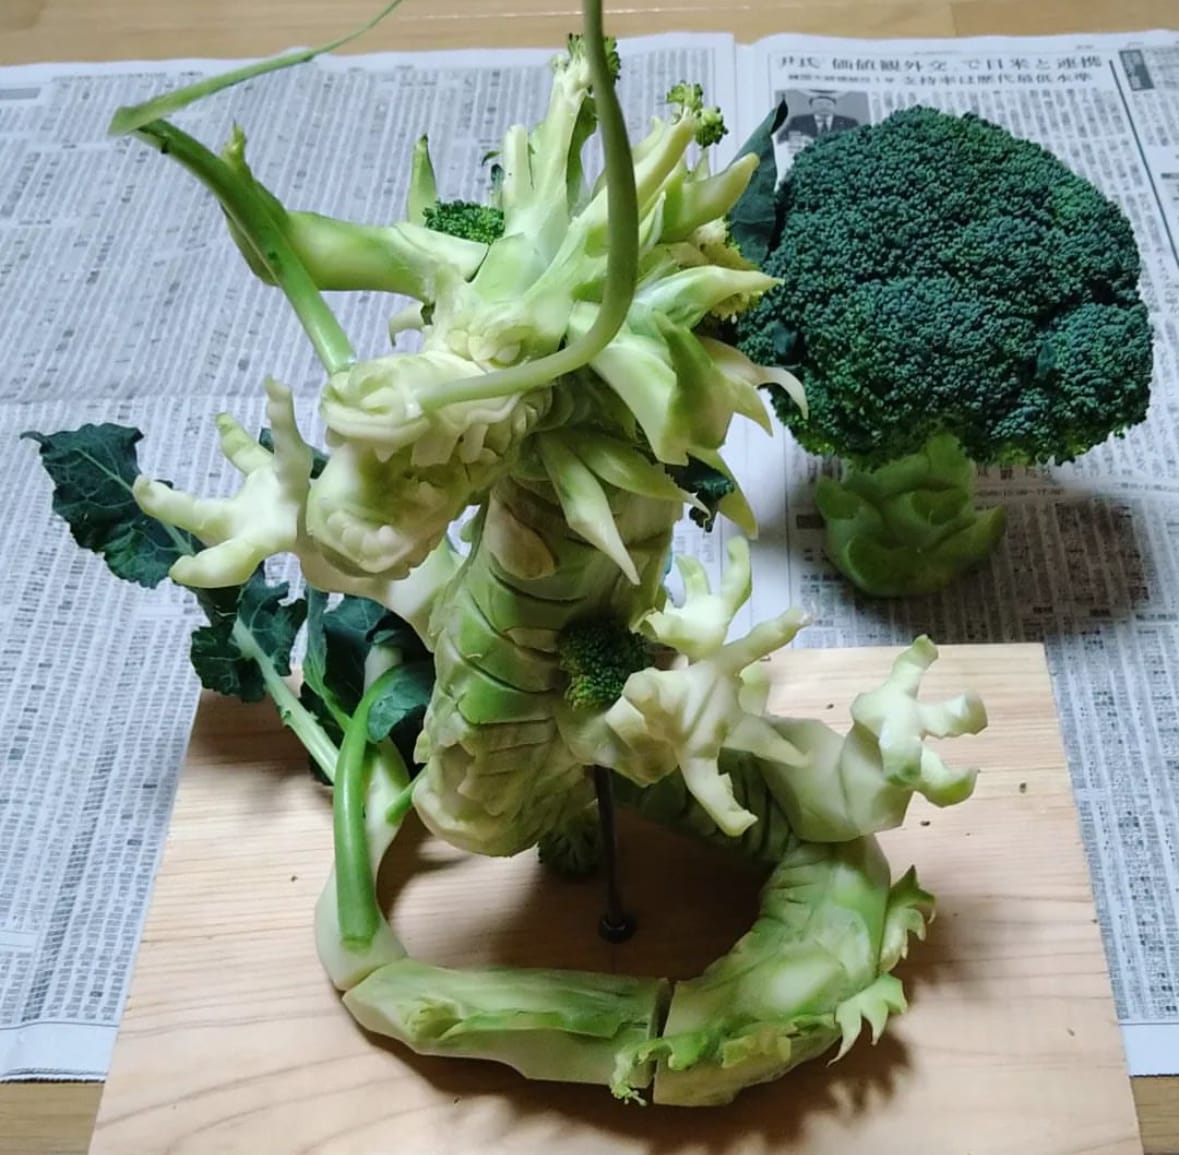 ผลงานการแกะสลักผักผลไม้ระดับเทพ Kishimoto Takehiro